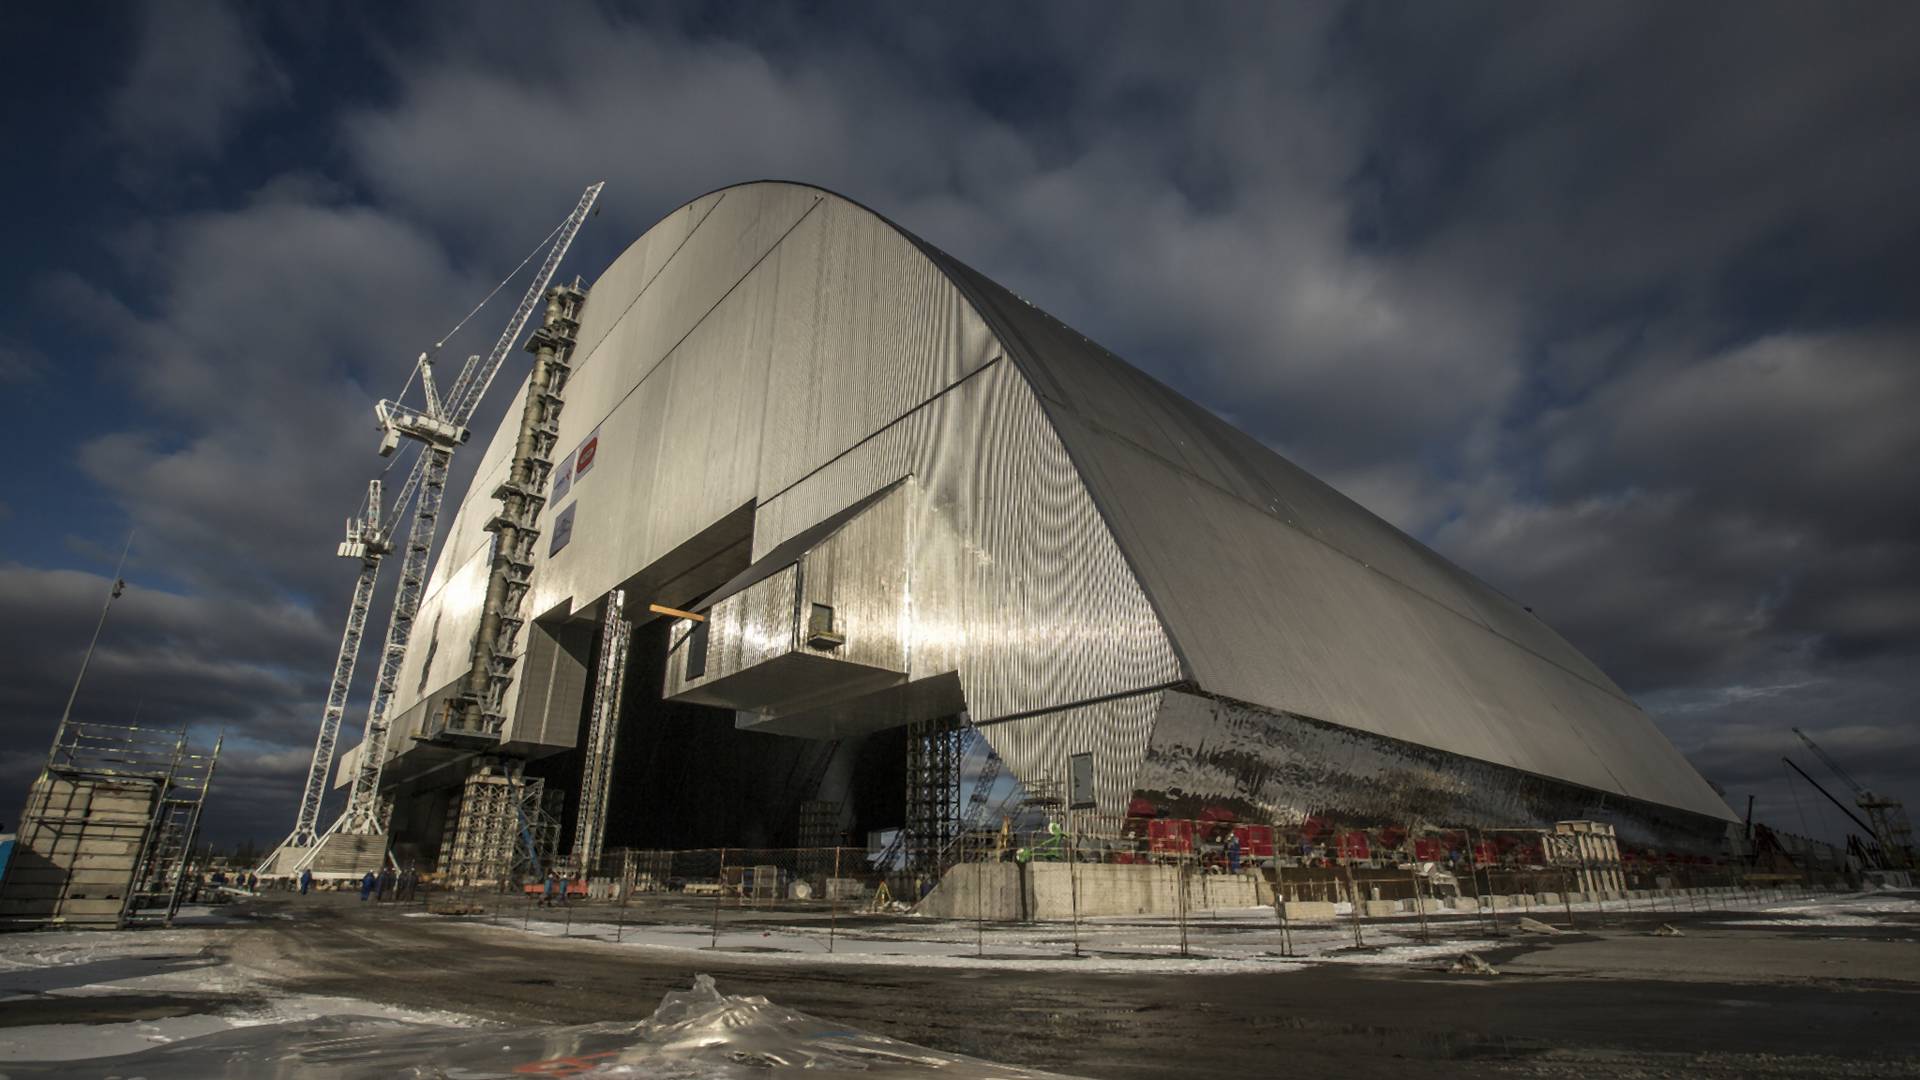 Nad reaktorem w Czarnobylu montowana jest największa na świecie kopuła ochronna. Wygląda kosmicznie